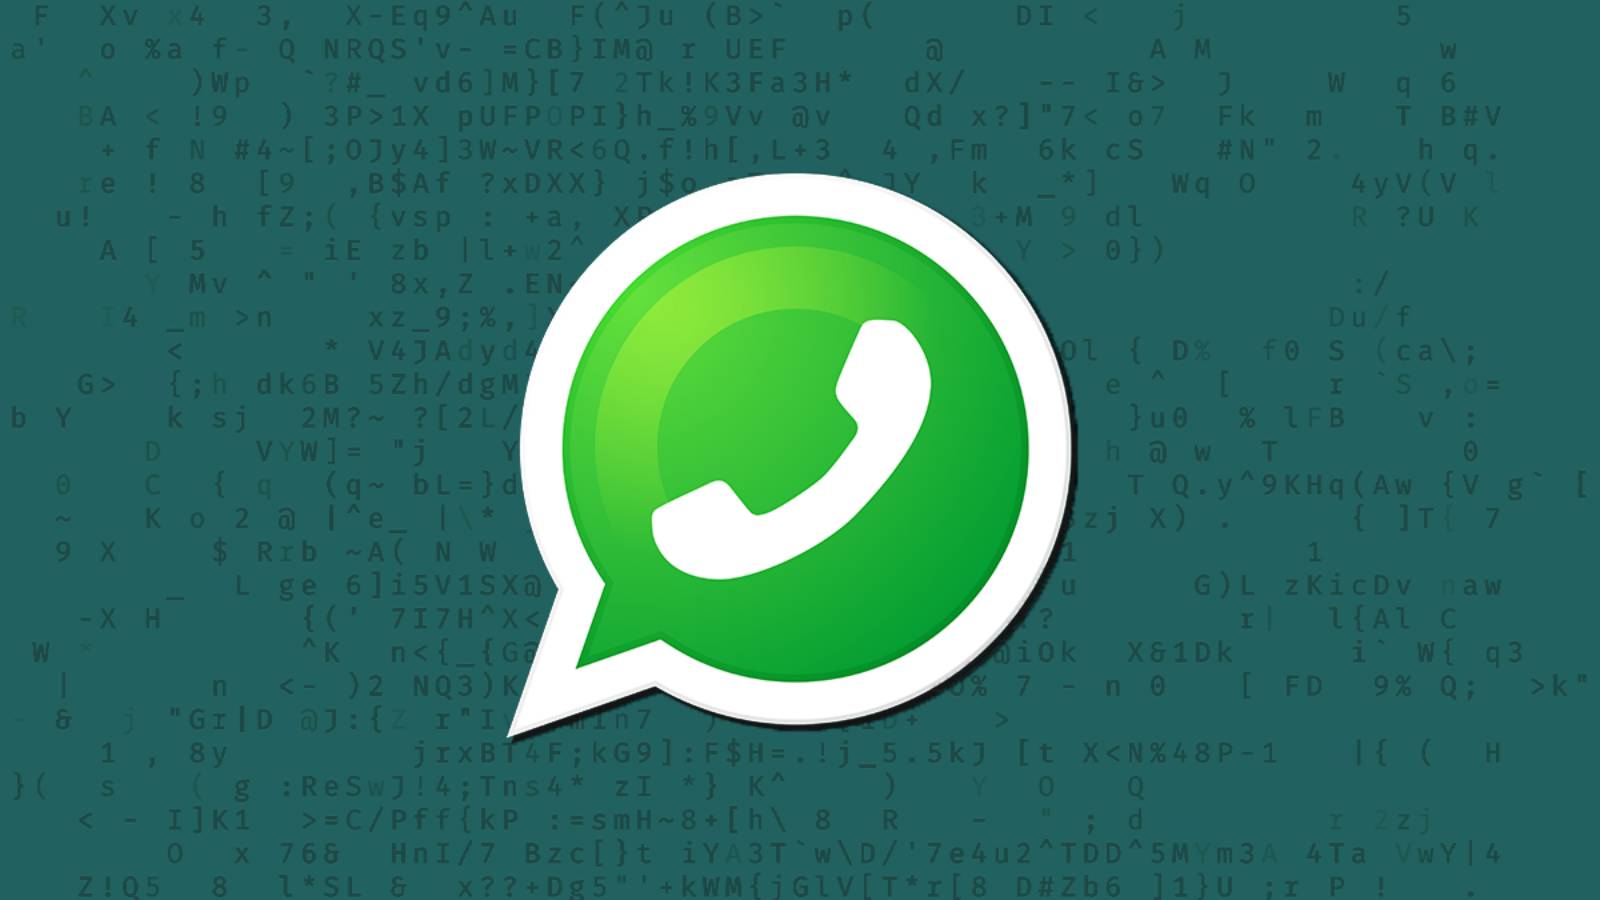 WhatsApp apporte un changement officiel de LAST MINUTE sur iPhone et Android